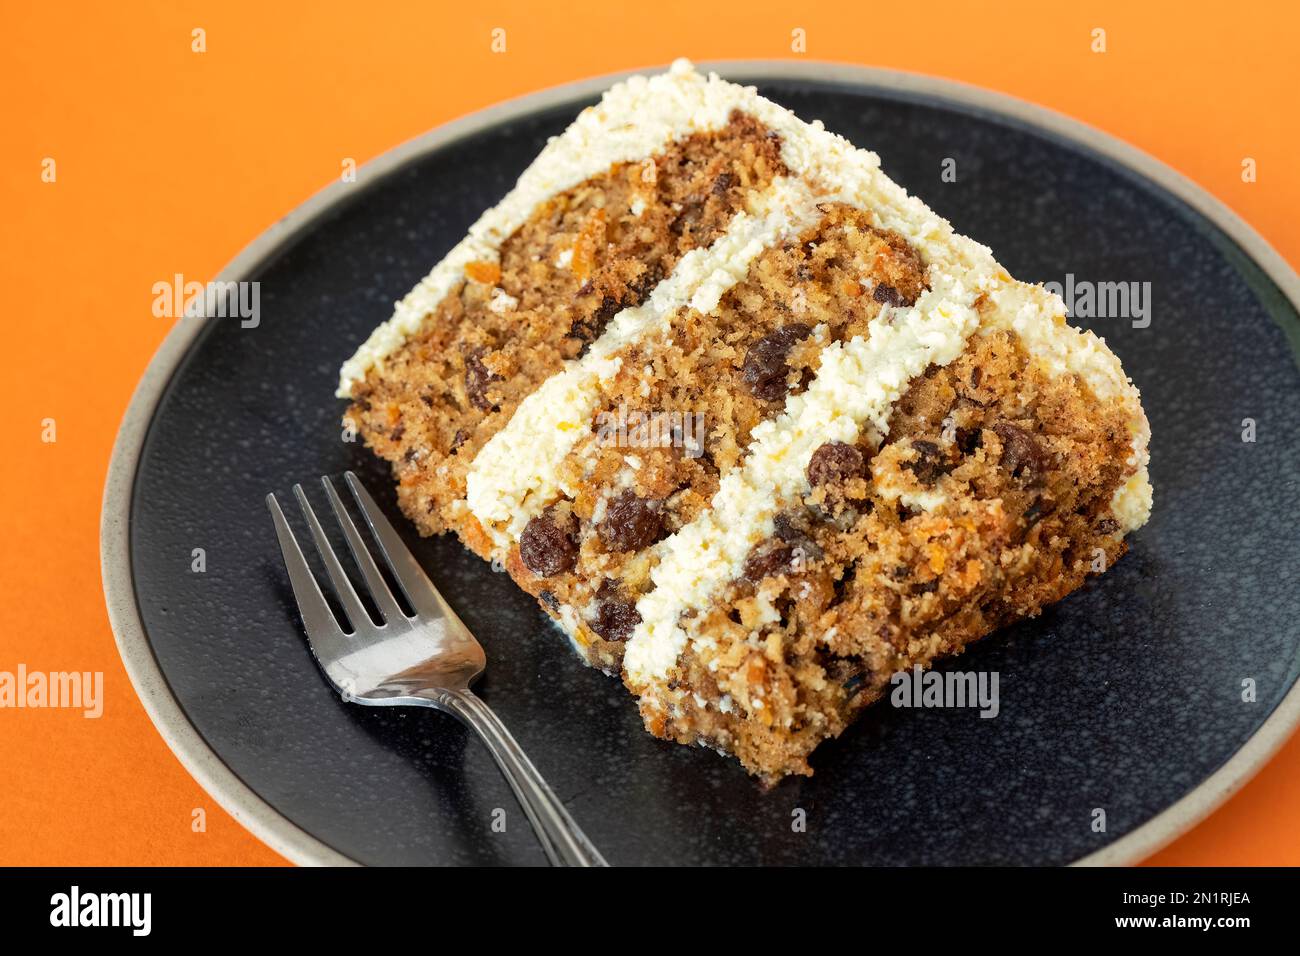 Ein frisch gebackenes Stück eines mehrstufigen oder mehrlagigen Karottenkuchen. Der Kuchen besteht aus drei Schichten mit einer Frischkäse-Buttercreme-Füllung und wird plattiert serviert Stockfoto